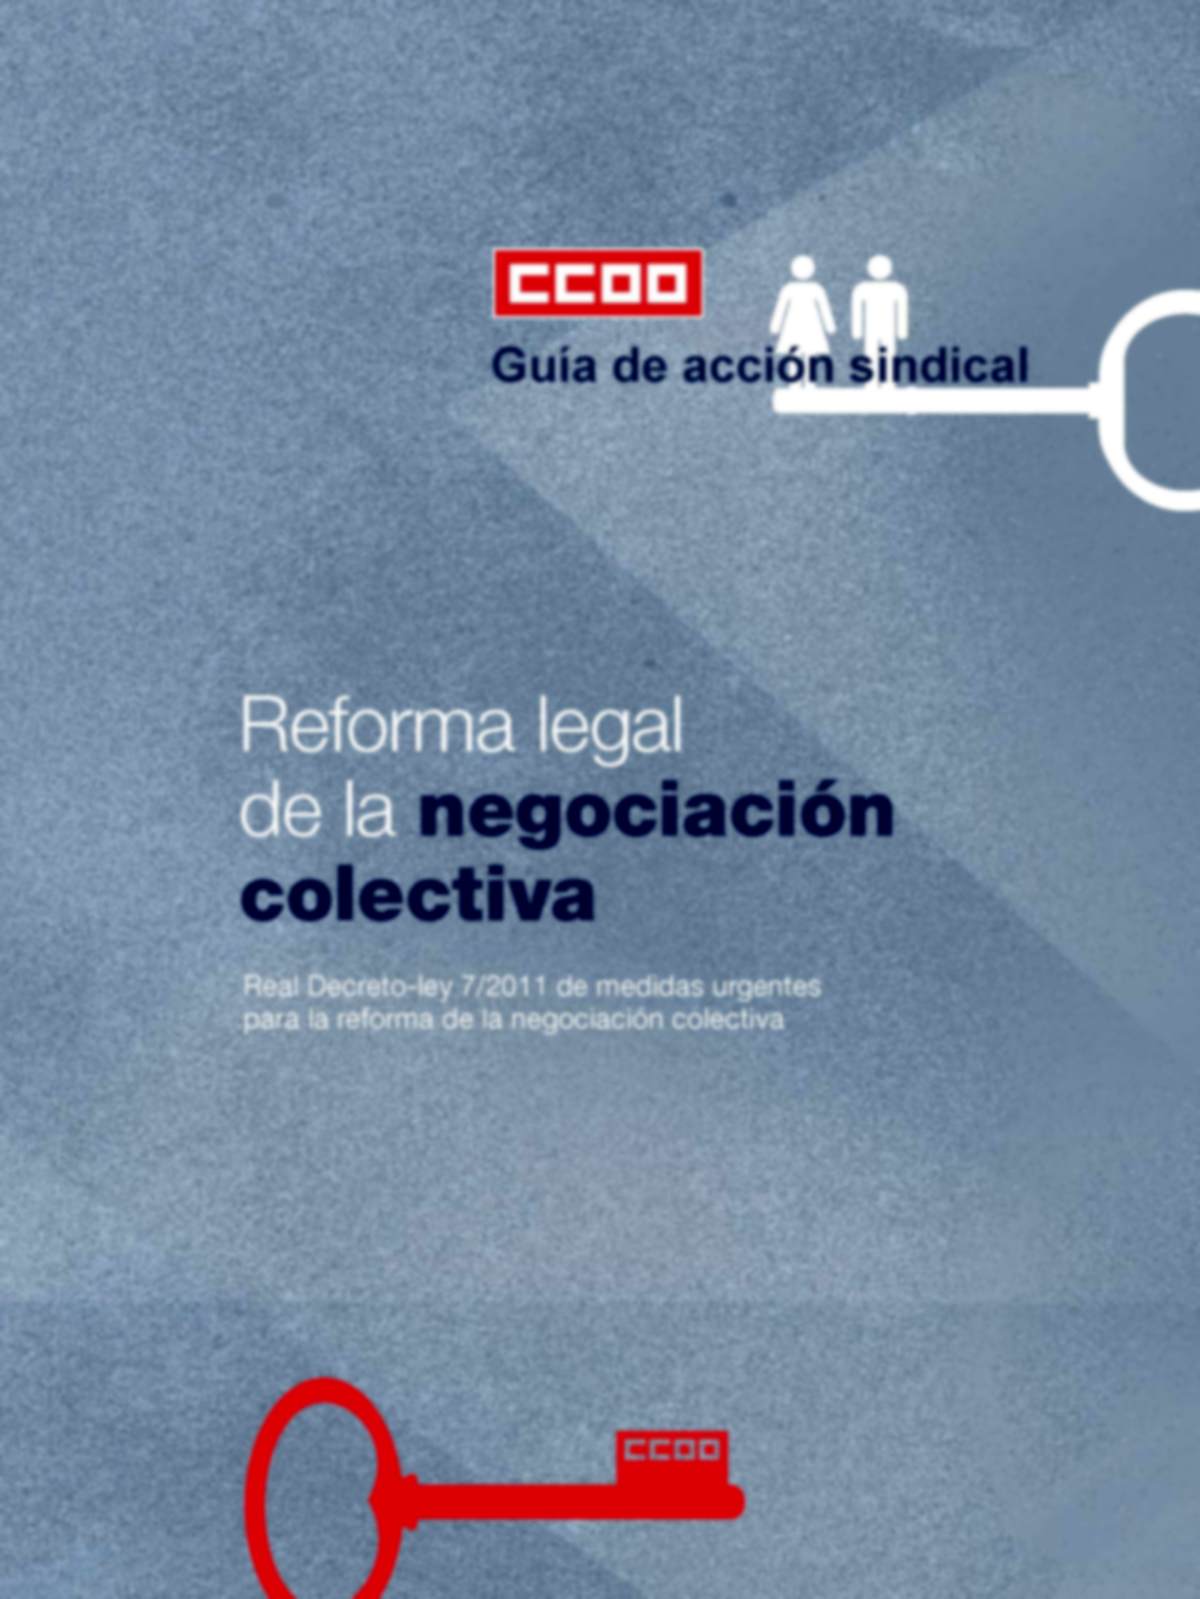 Guía de acción sindical: Reforma legal de la negociación colectiva